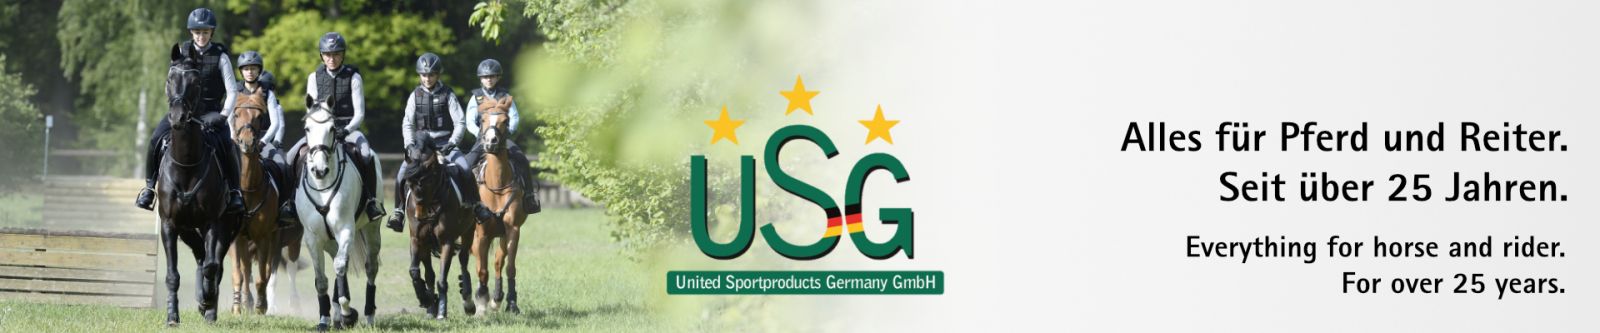 Sustainability - USG - United Sportproducts Germany GmbH